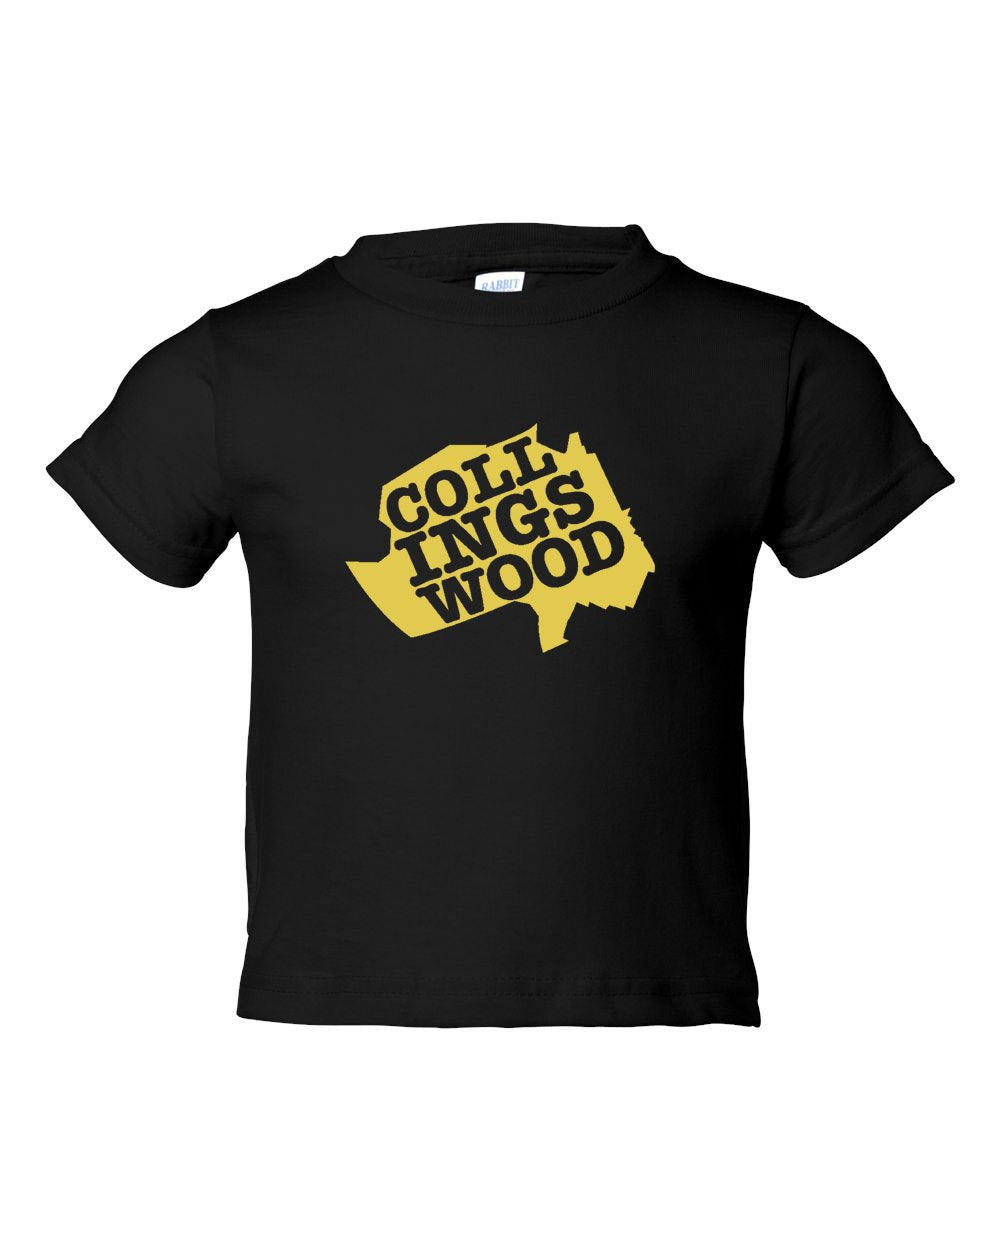 Collingswood Yellow Logo TODDLER T-Shirt